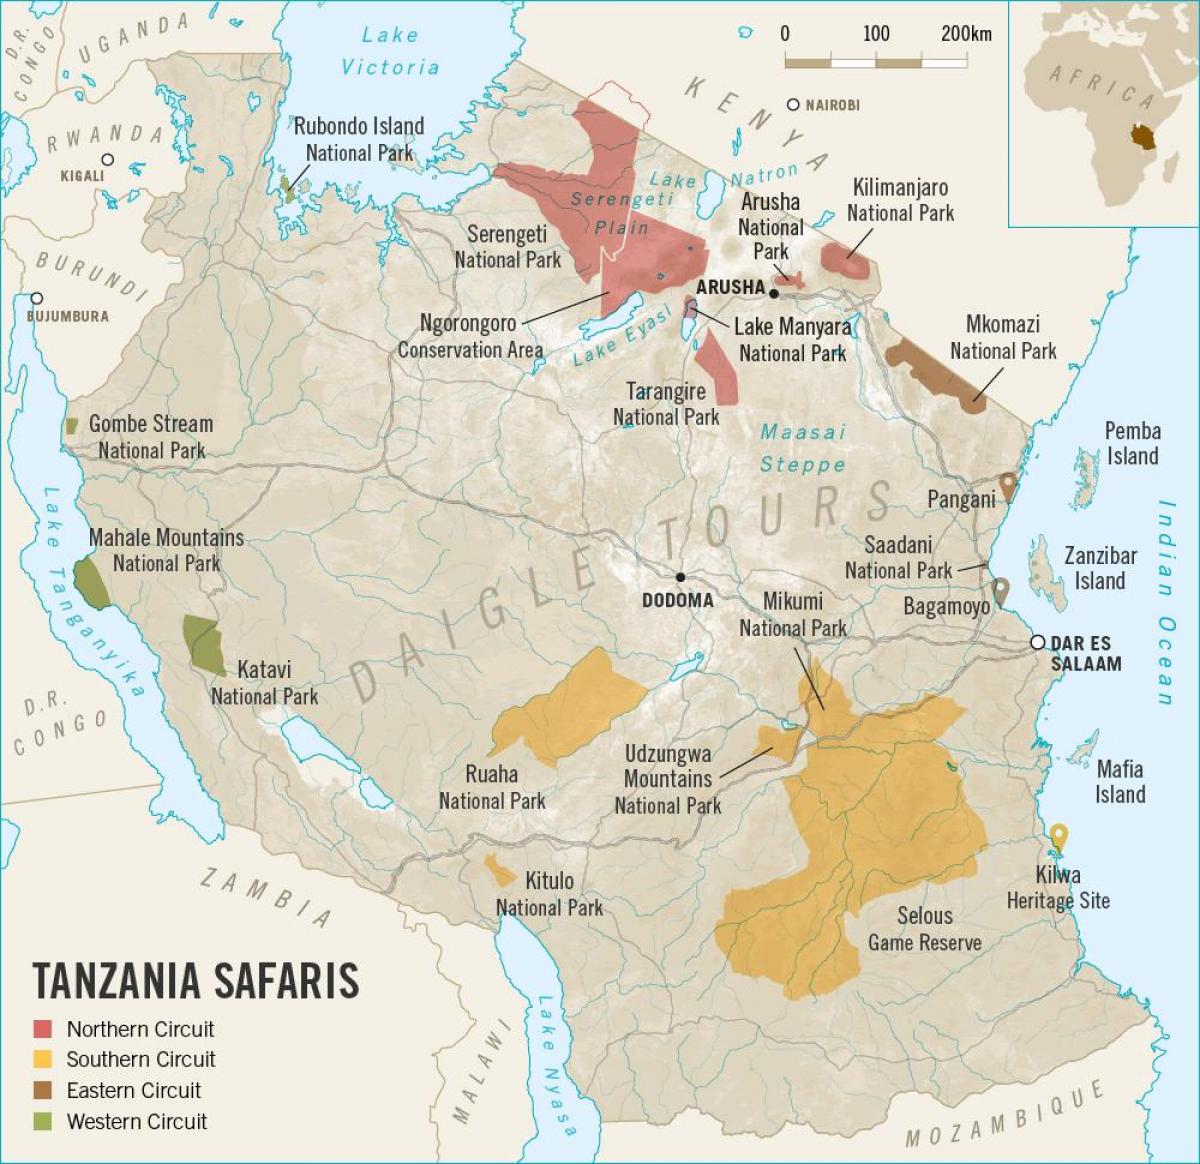 Peta tanzania safari 